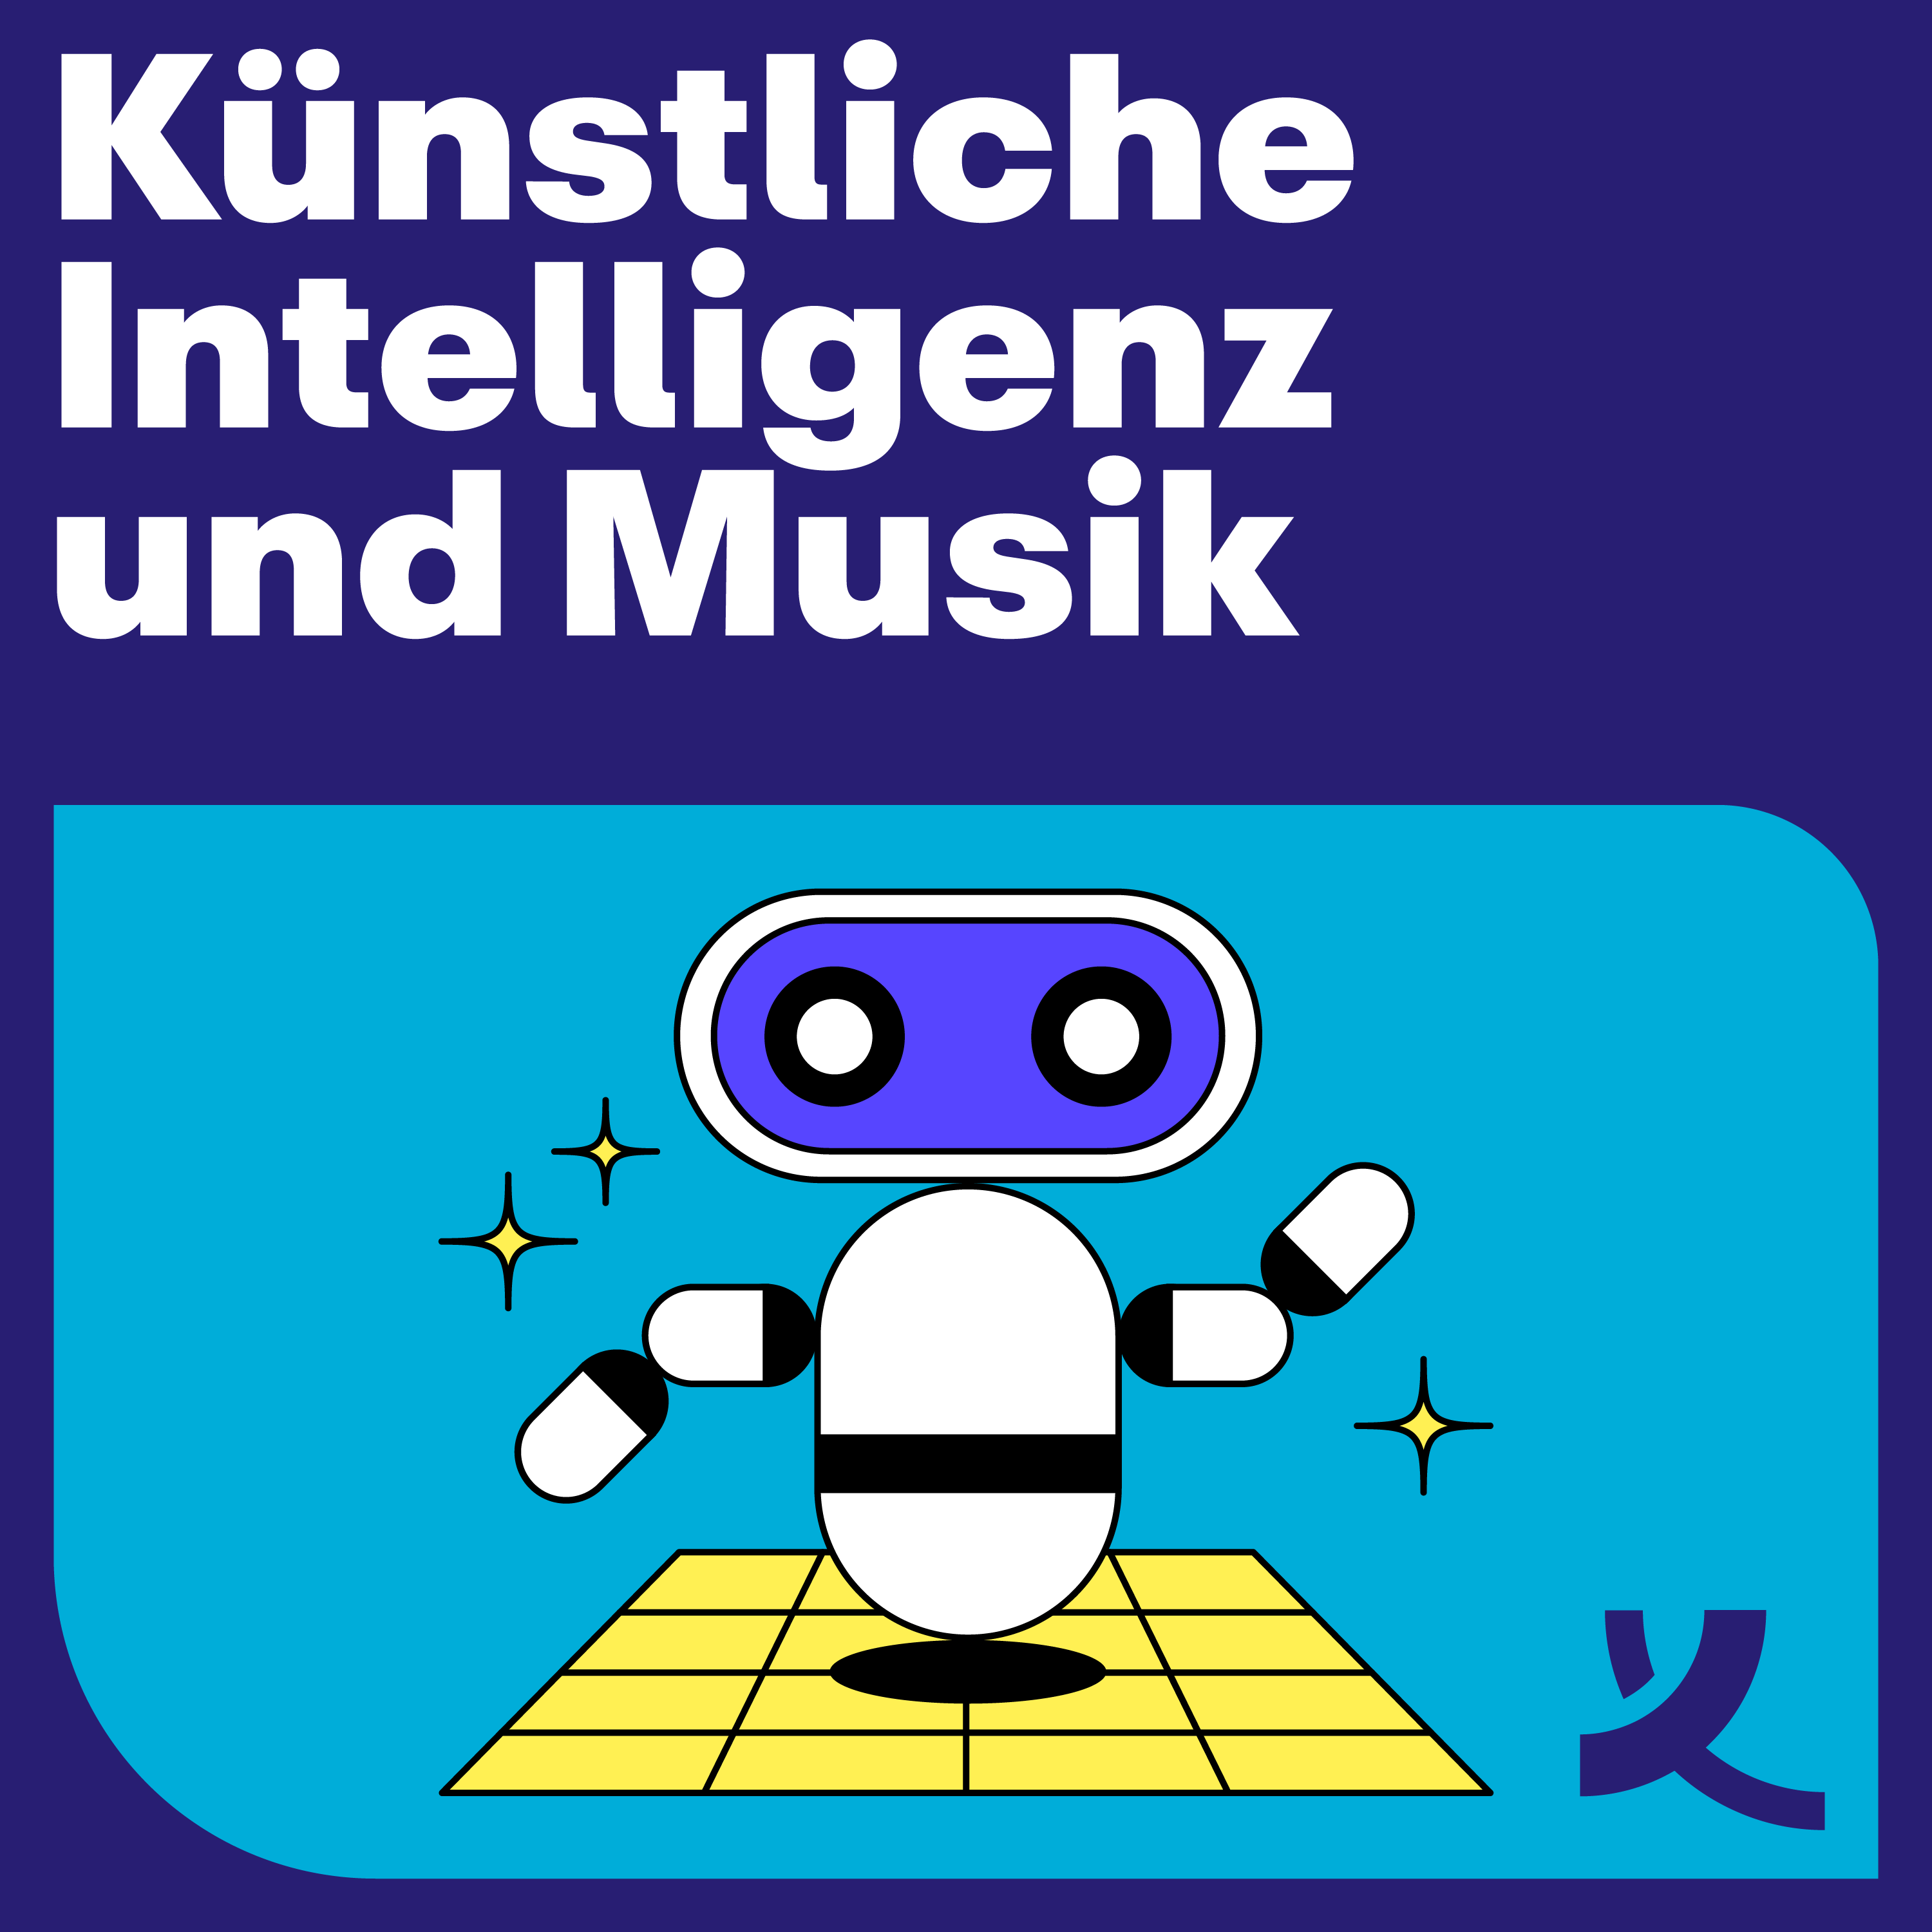 Artwork: Künstliche Intelligenz und Musik